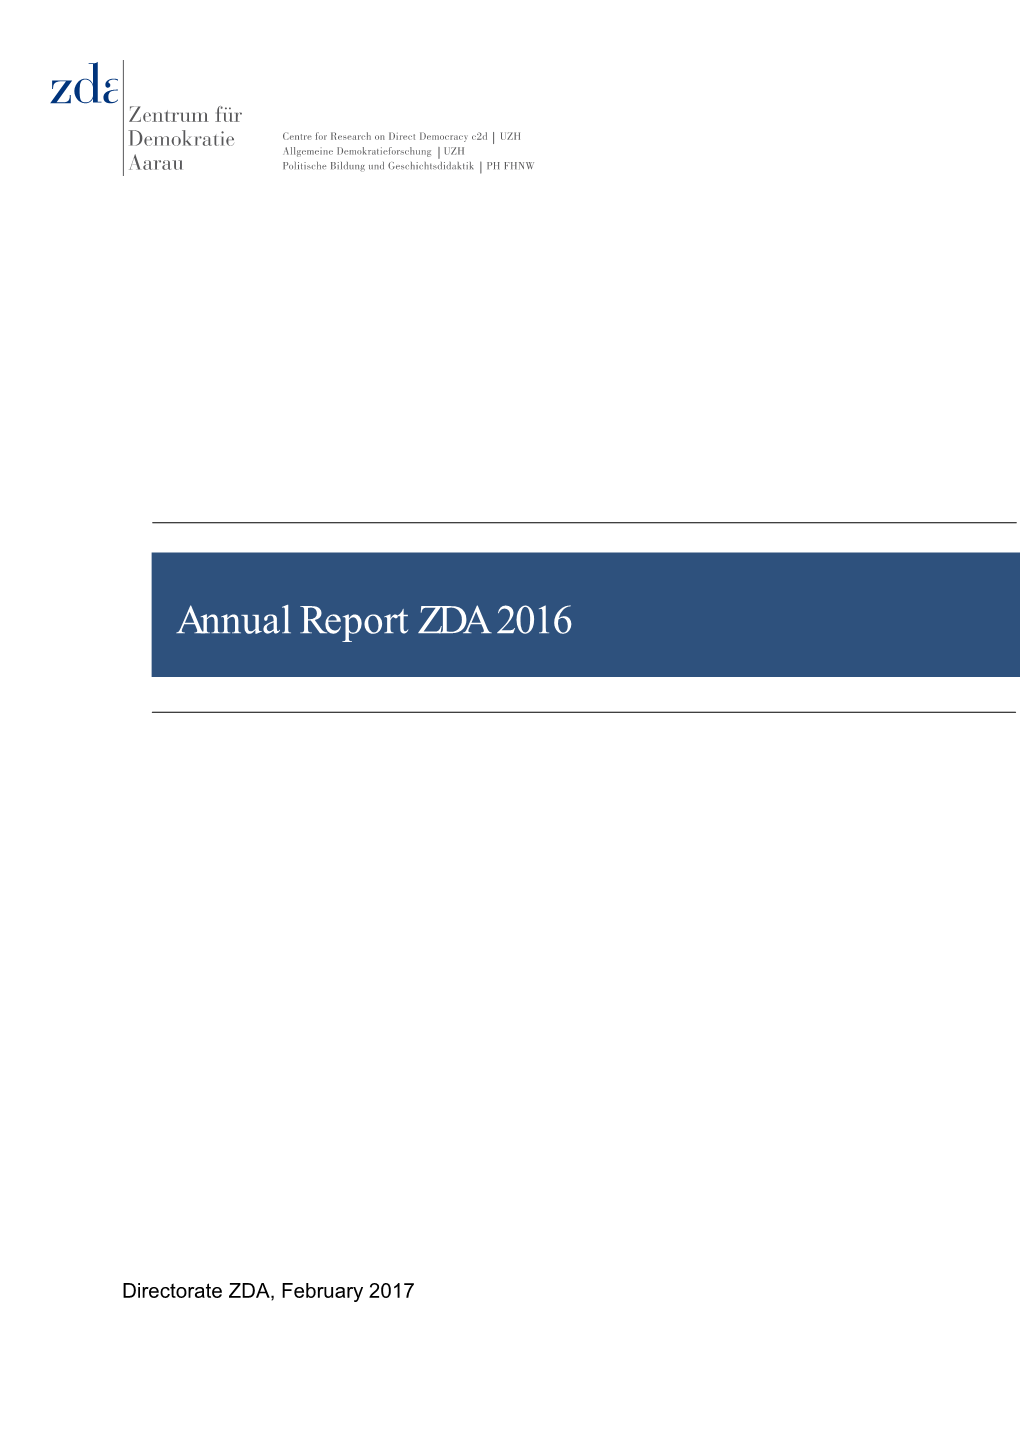 Annual Report ZDA 2016